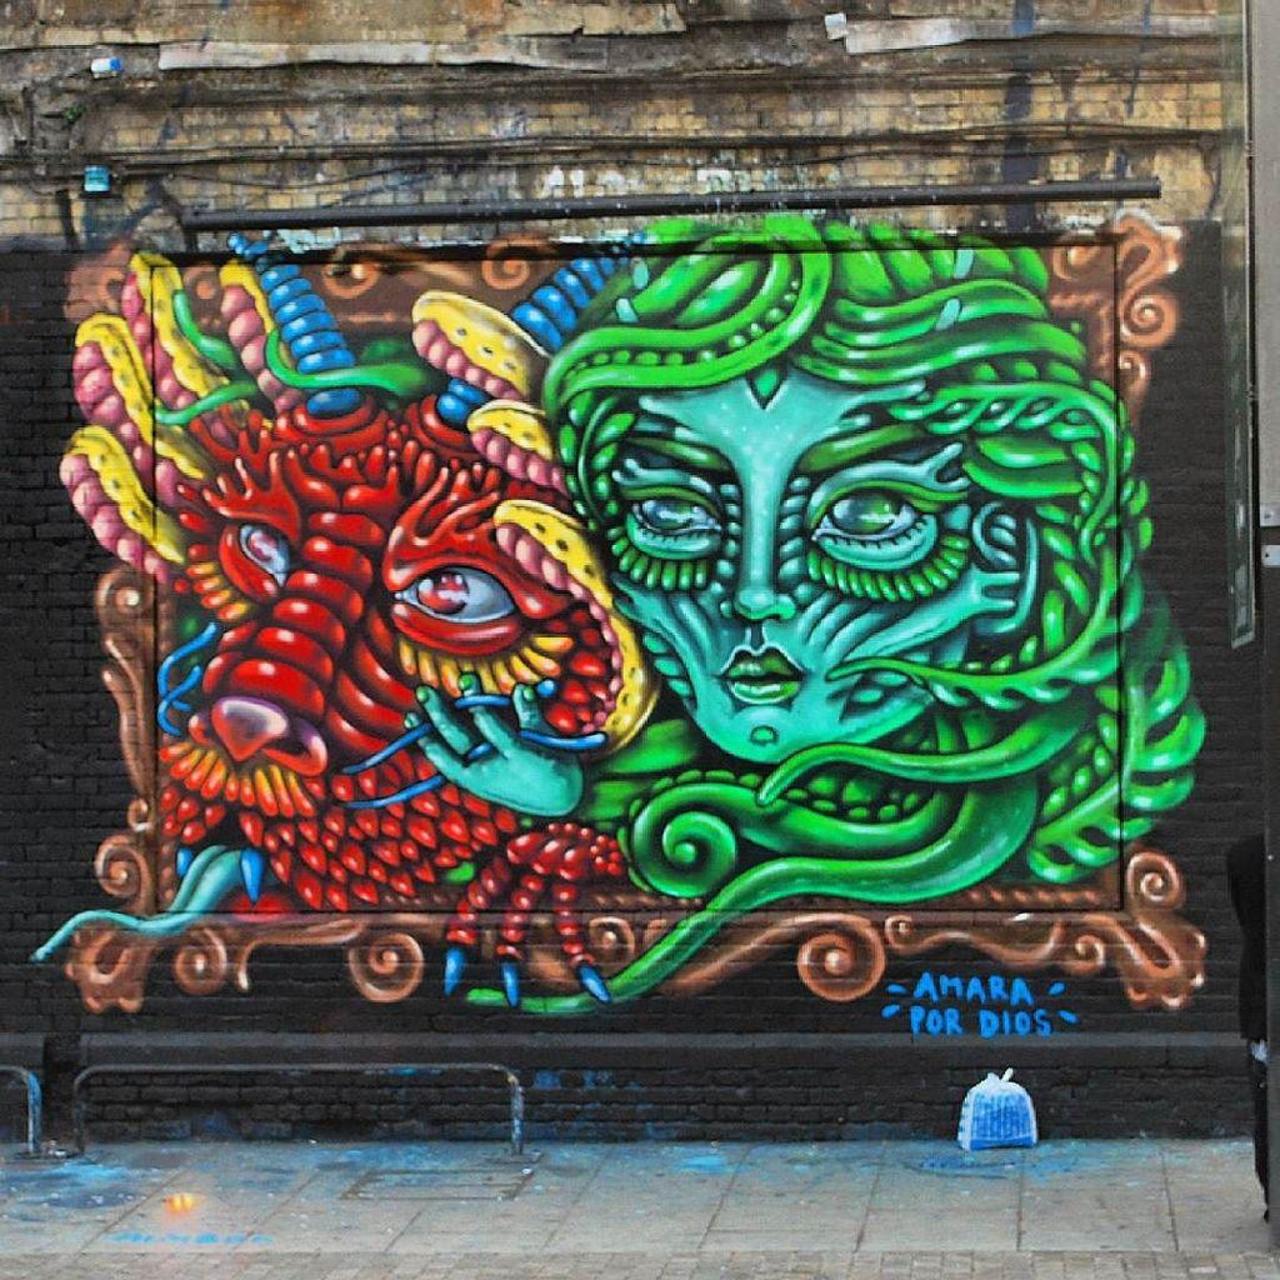 Art by Amarapordios 
#Graffiti #StreetArt #UrbanArt #Amarapordios #BehindTheCurtain #ShoreditchCurtain #GreatEaste… http://t.co/KDKGTnB3U3